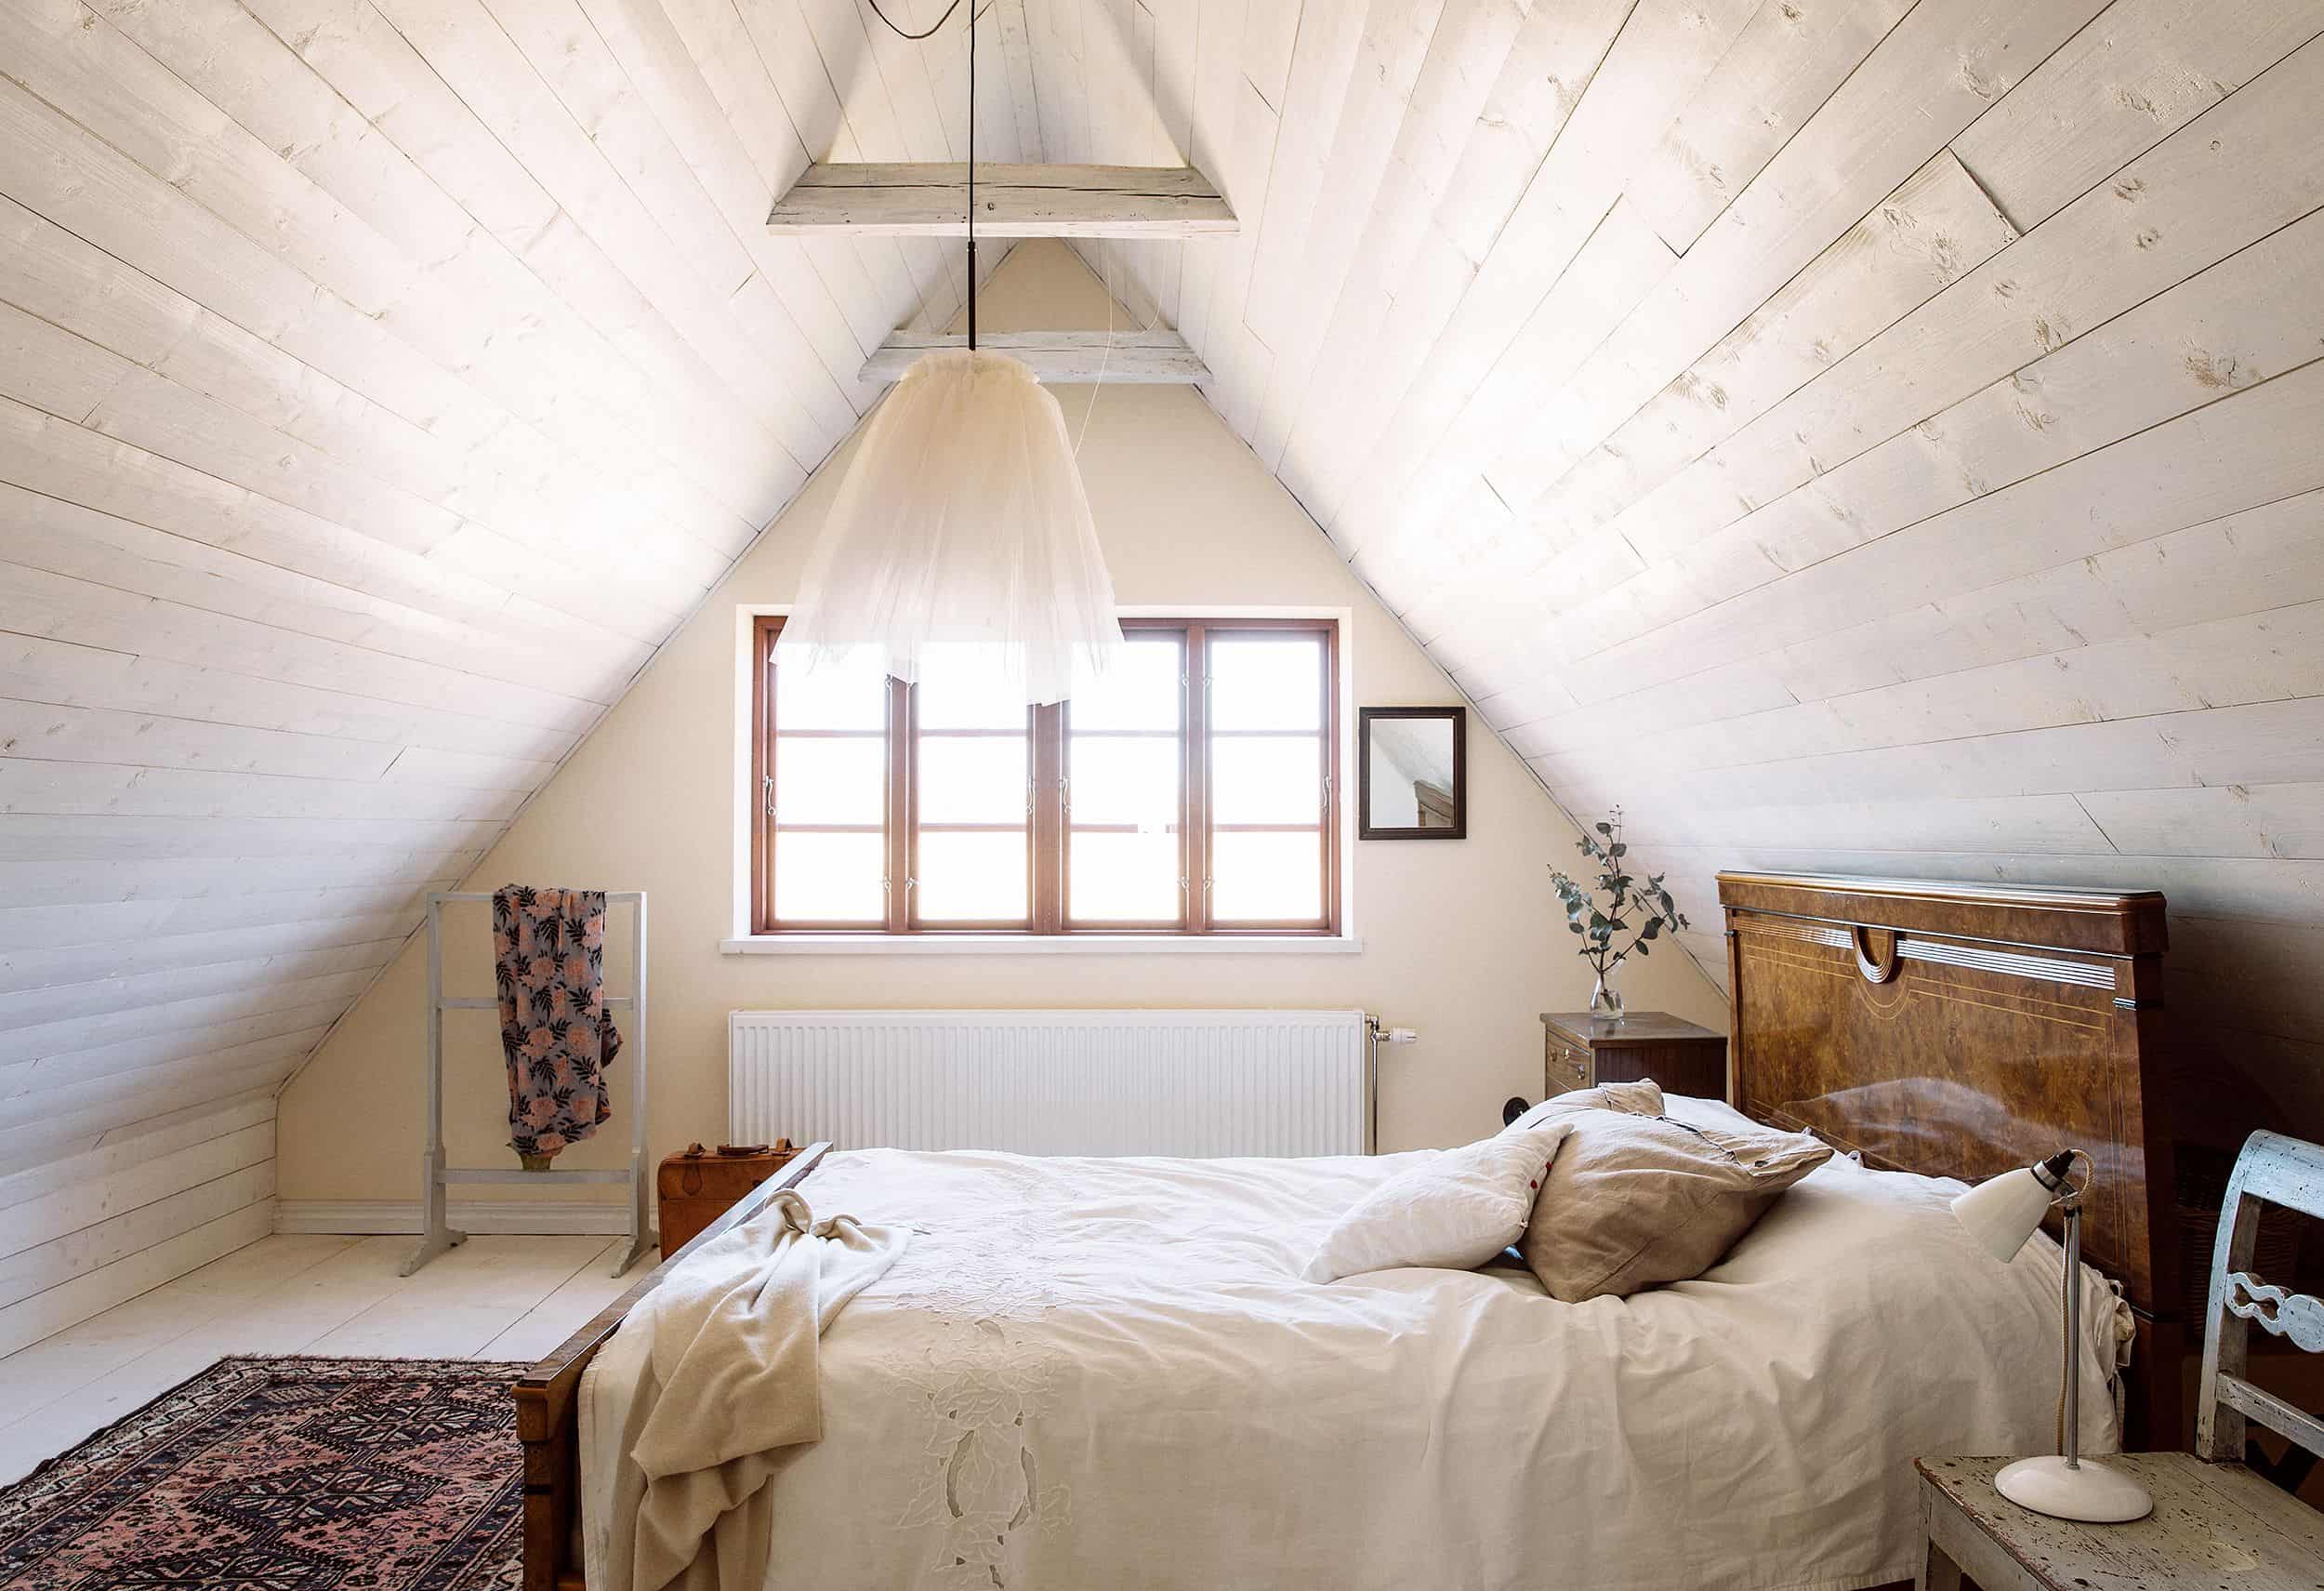 Small loft bedroom design ideas